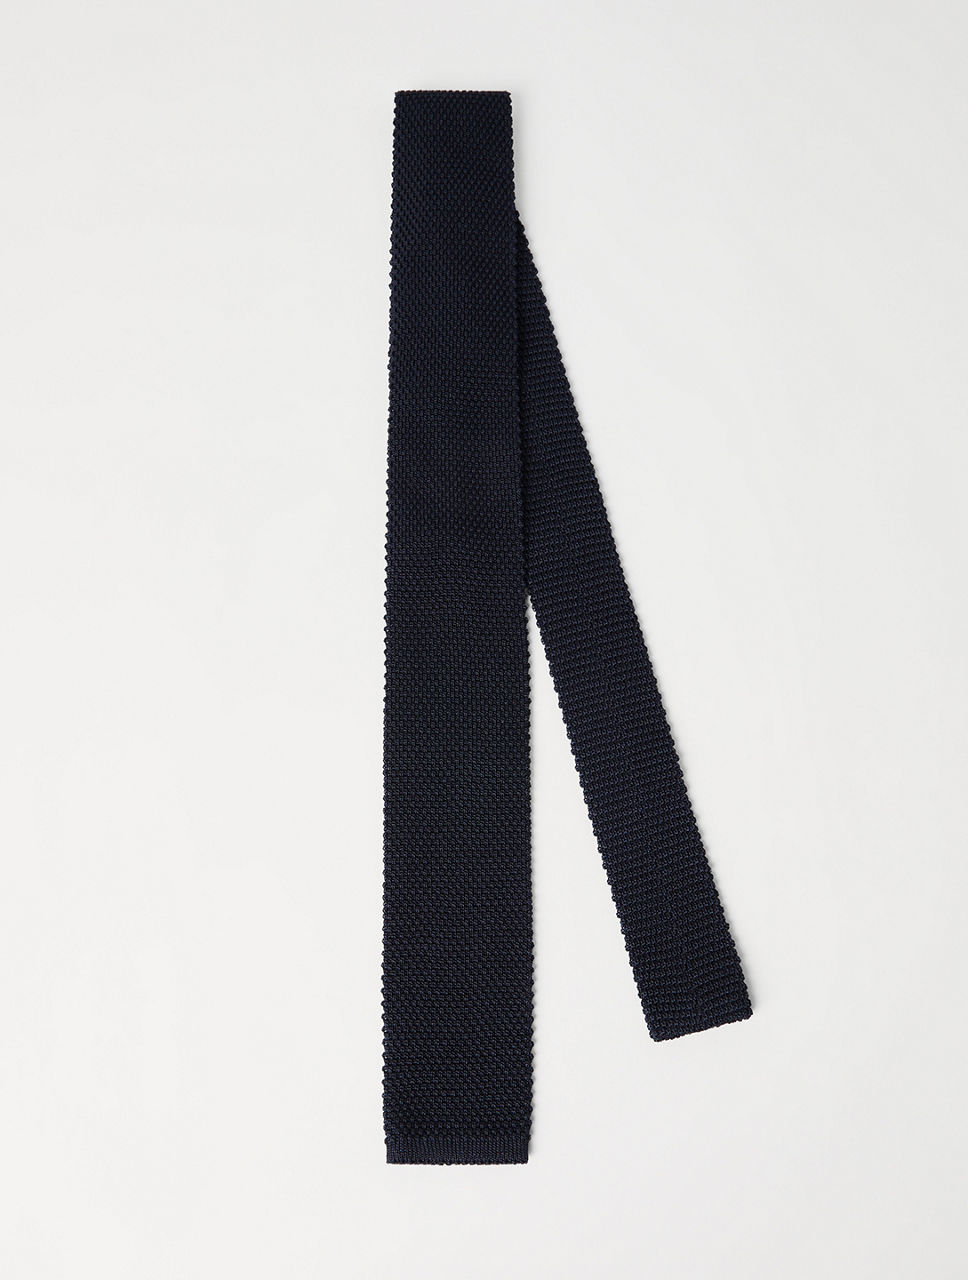 Knit Necktie